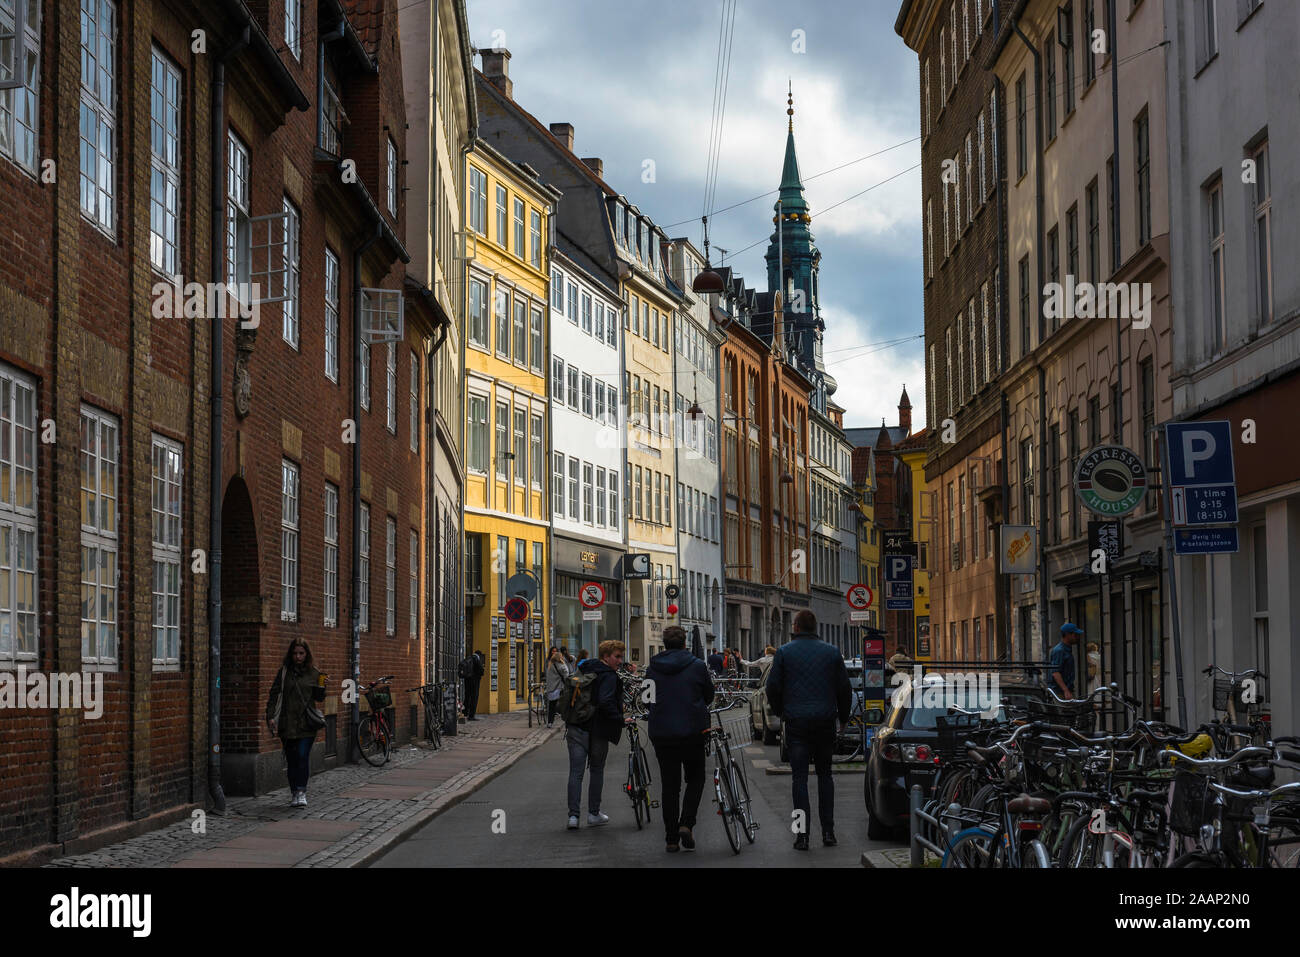 Krystalgade Copenhagen, view of people walking along Krystalgade, a street in the Old Town university district of Copenhagen, Denmark. Stock Photo